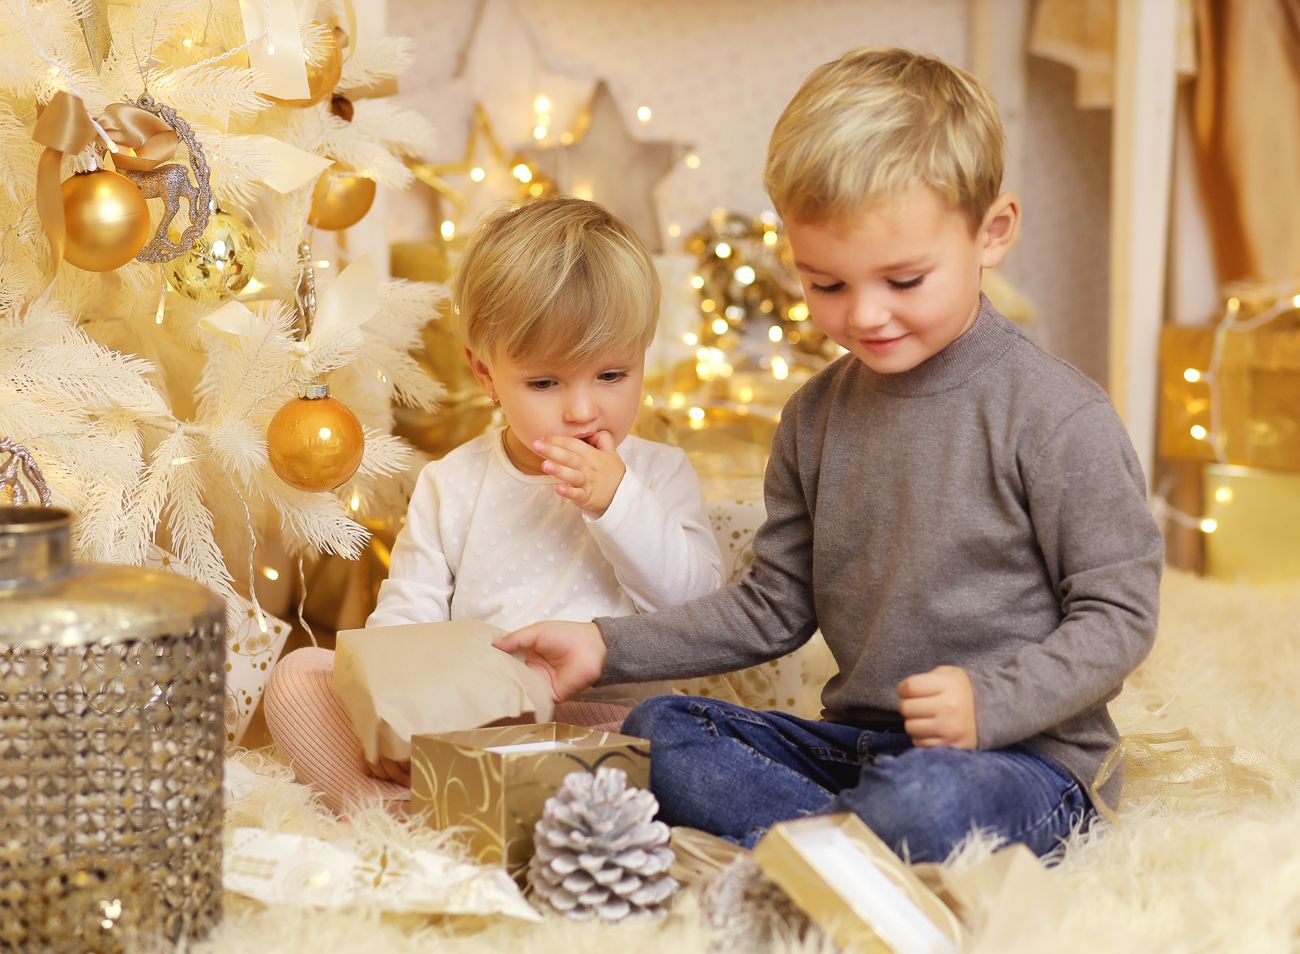 Vánoční fotografie dětí rozbalujících dárky v ateliéru | © Fotoprome.cz